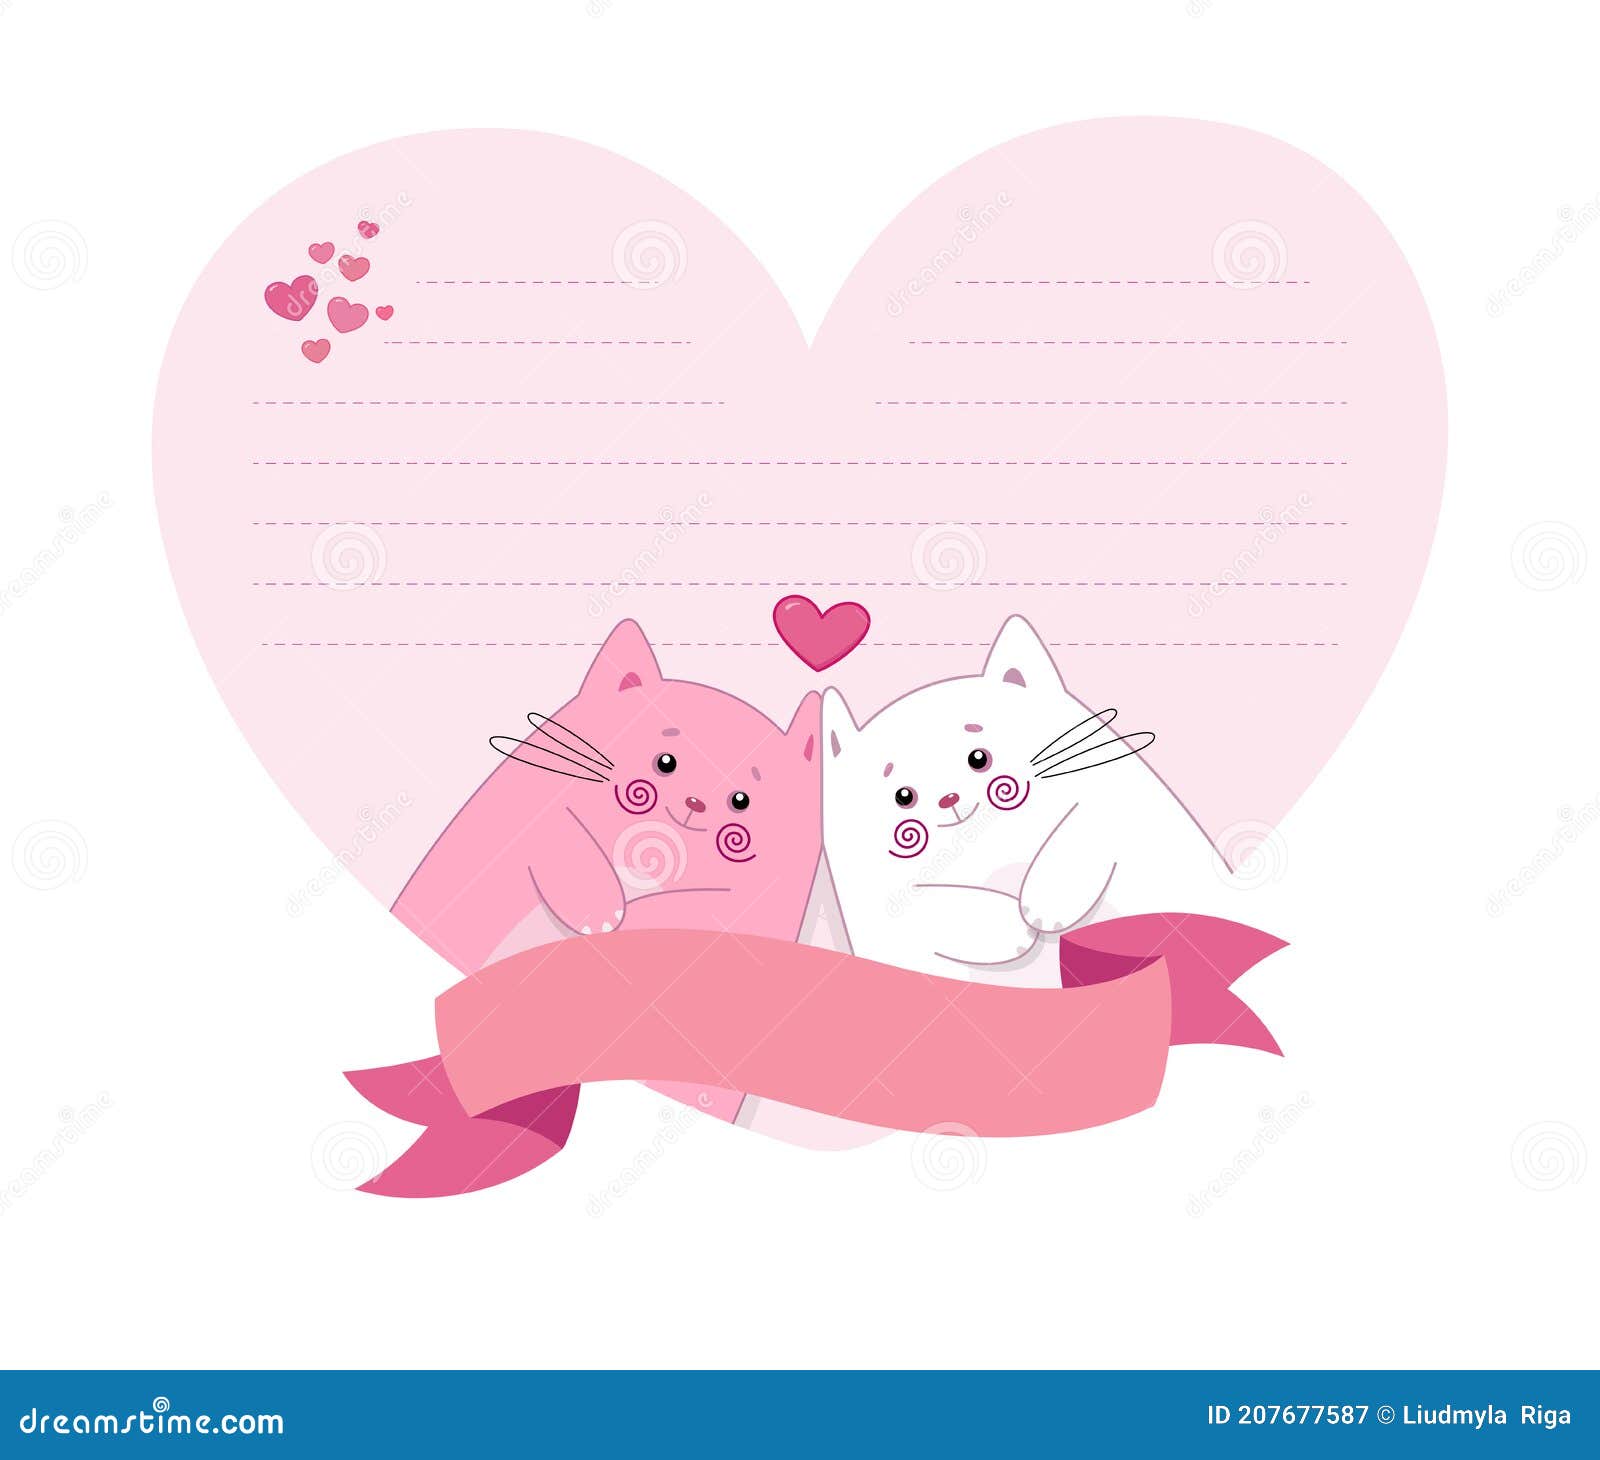 Love Letter Vector Design Images, Letter Love With Cat Icon, Cat Icons, Love  Icons, Letter Icons PNG Image For Free Download